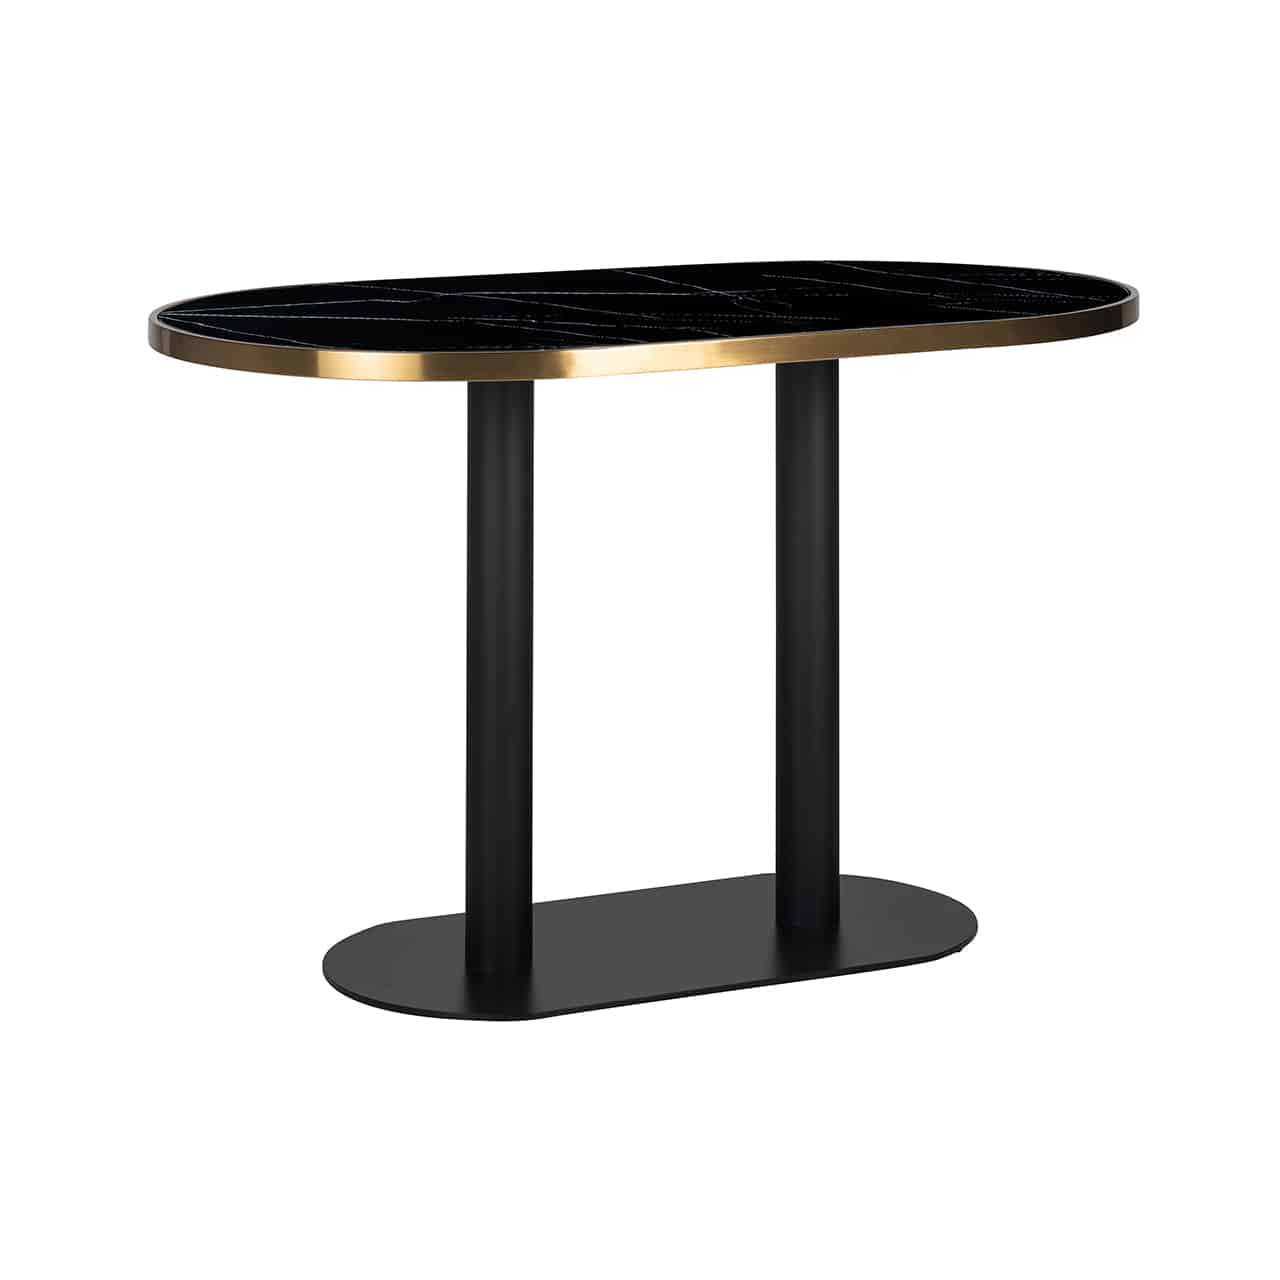 Kleiner Esstisch in schwarz, bestehend aus einem ovalen Standteller mit zwei säulenartigen Füßen, darauf eine ovale, marmorierte Tischplatte, eingerahmt von einem breiten Goldband.